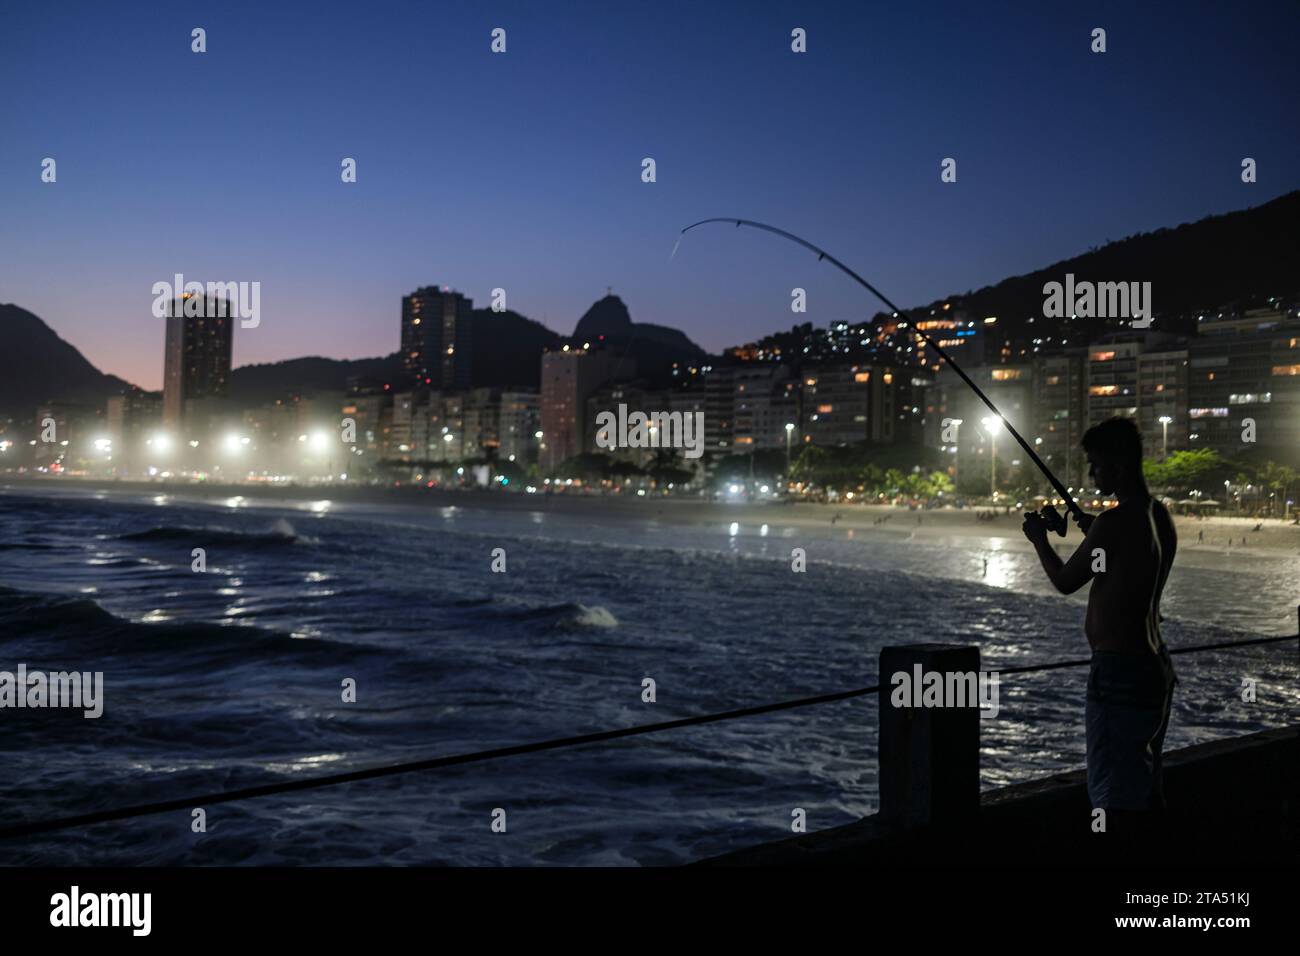 Gente che pesca a Mureta do Leme, Rio de Janeiro, Brasile. Spiaggia di Leme al tramonto, Cristo Redentore e favela Morro da Babilonia al centro dietro gli edifici sul lungomare. Foto Stock